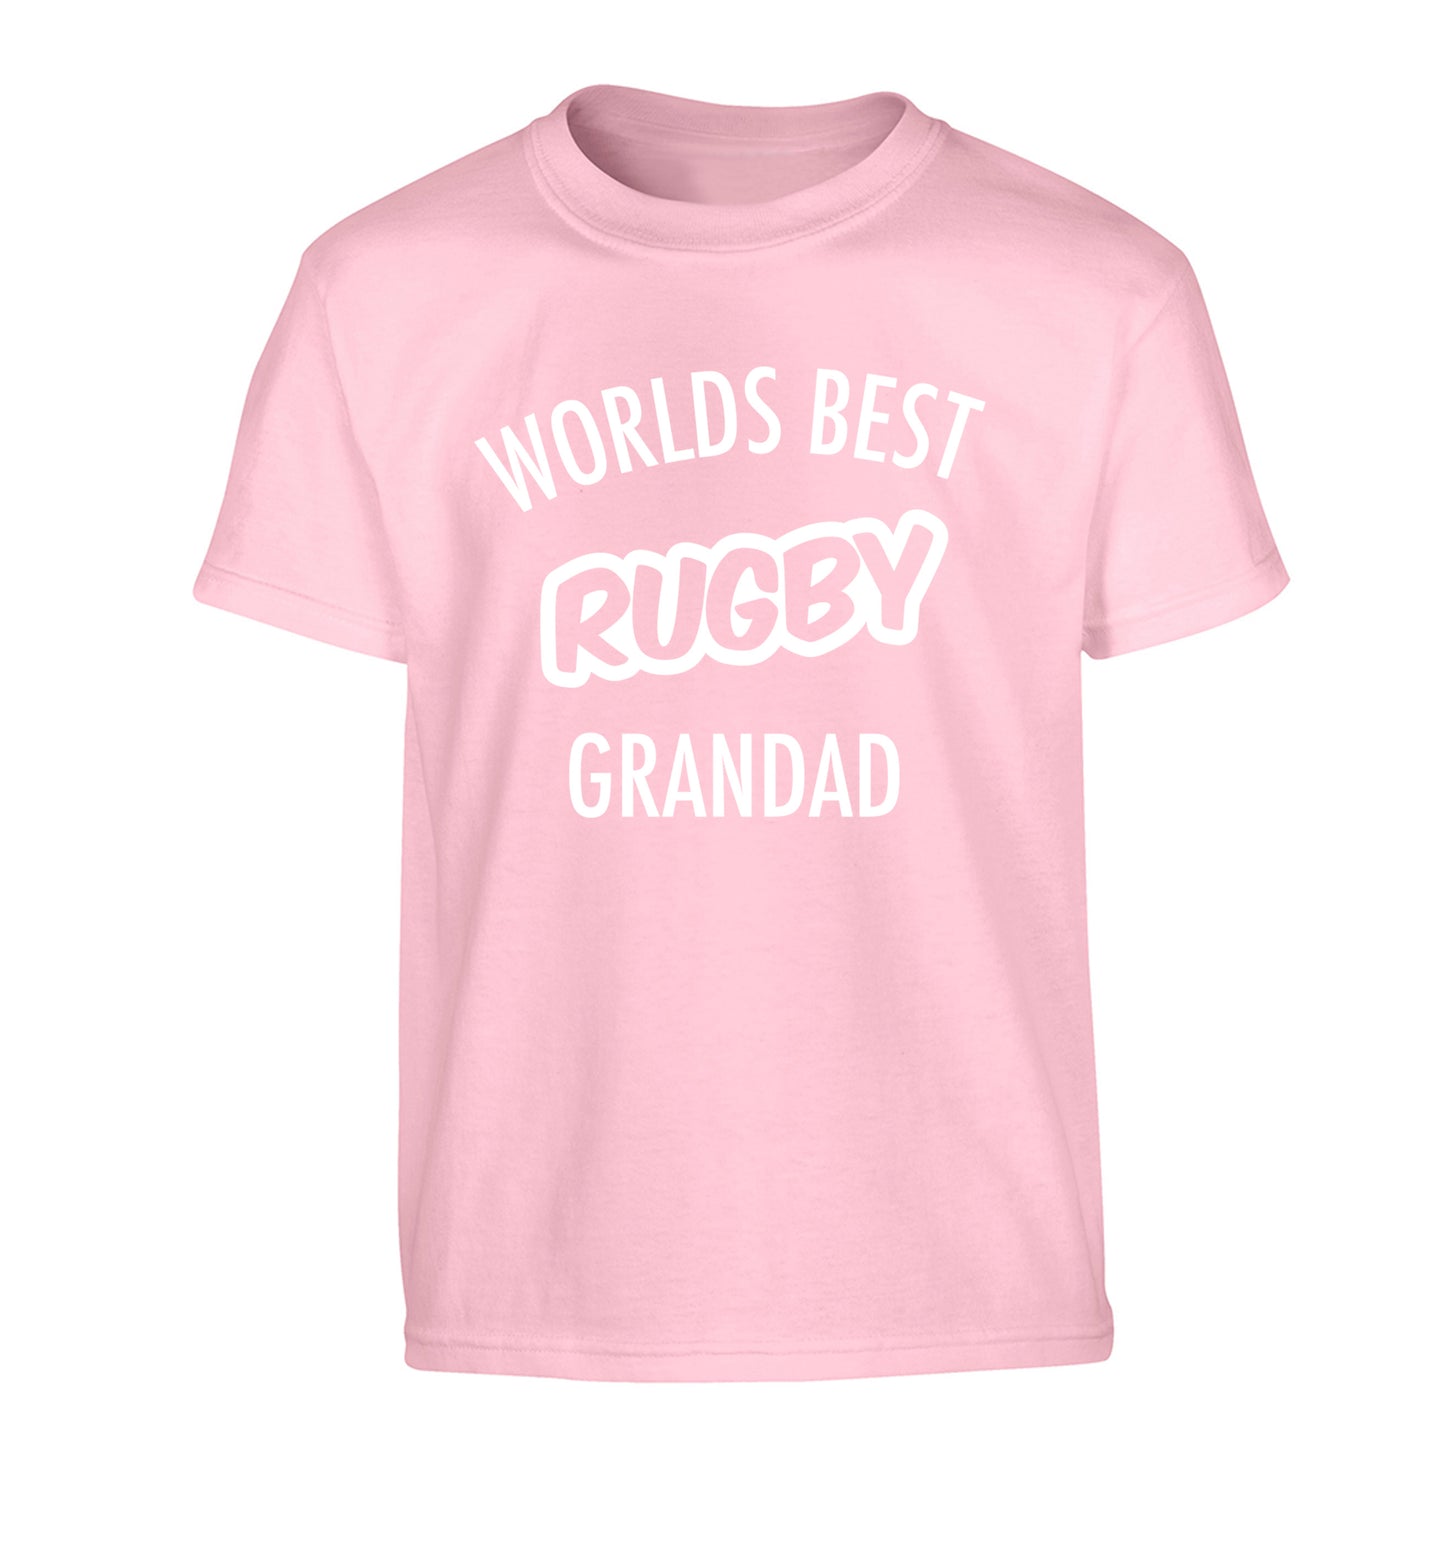 Worlds best rugby grandad Children's light pink Tshirt 12-13 Years